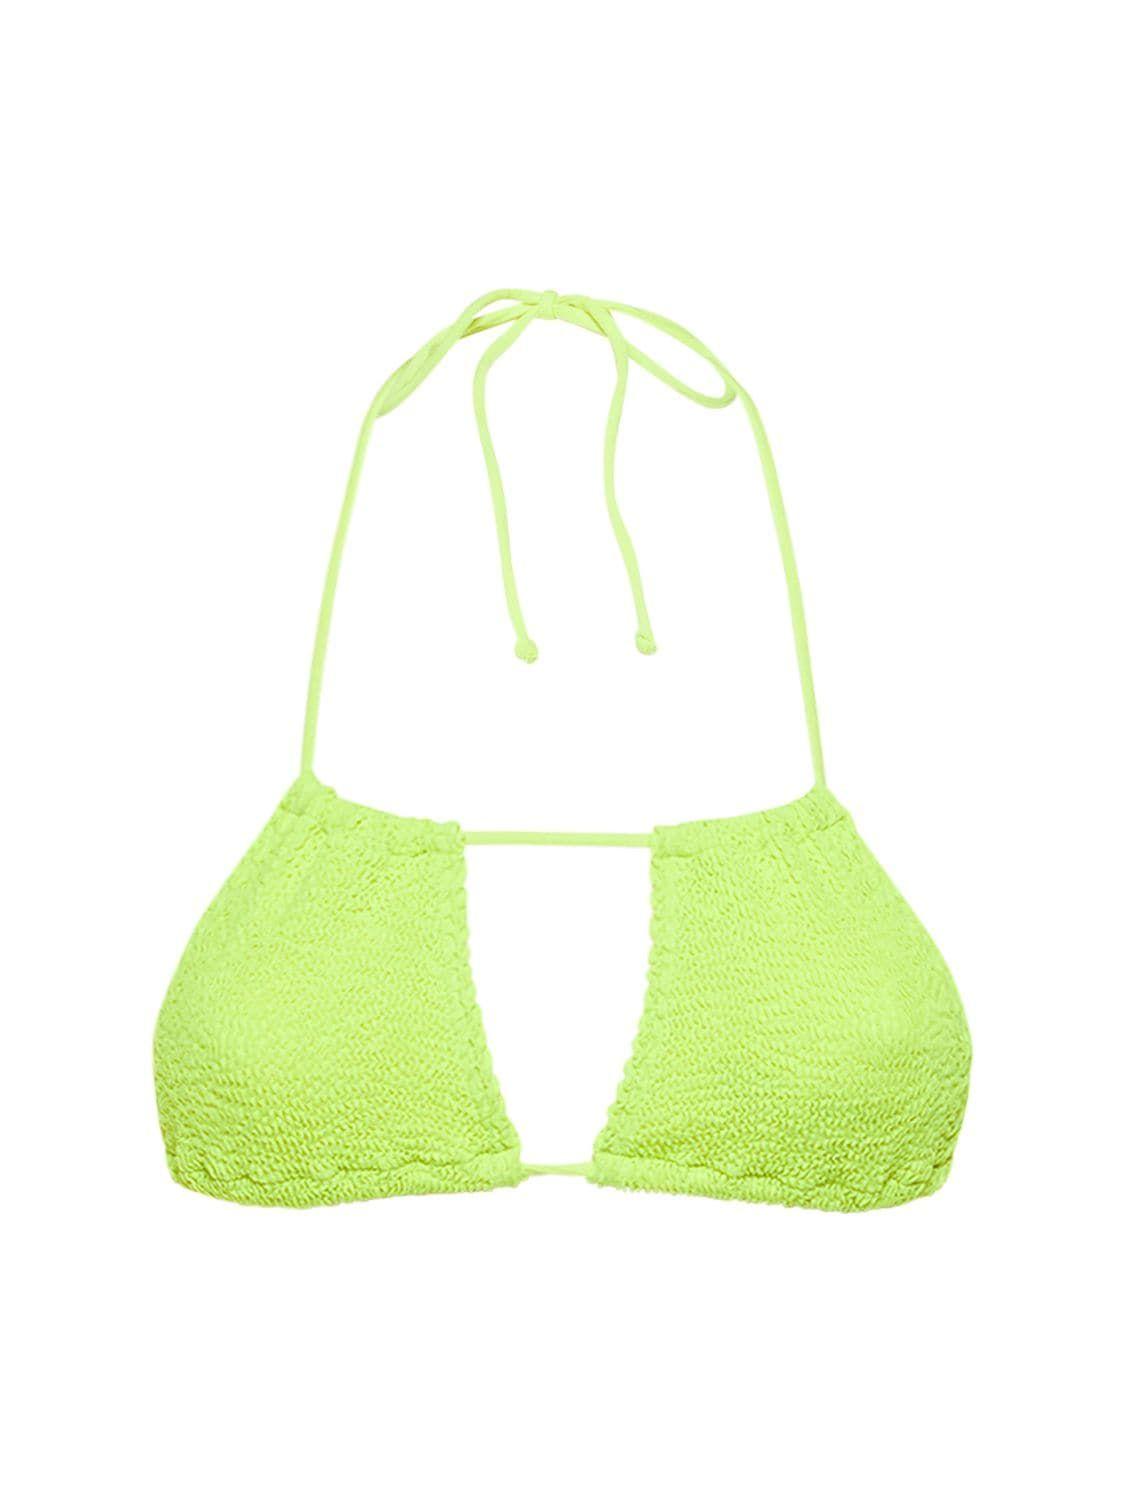 Bondeye Andy Triangle Bikini Top in Green | Lyst